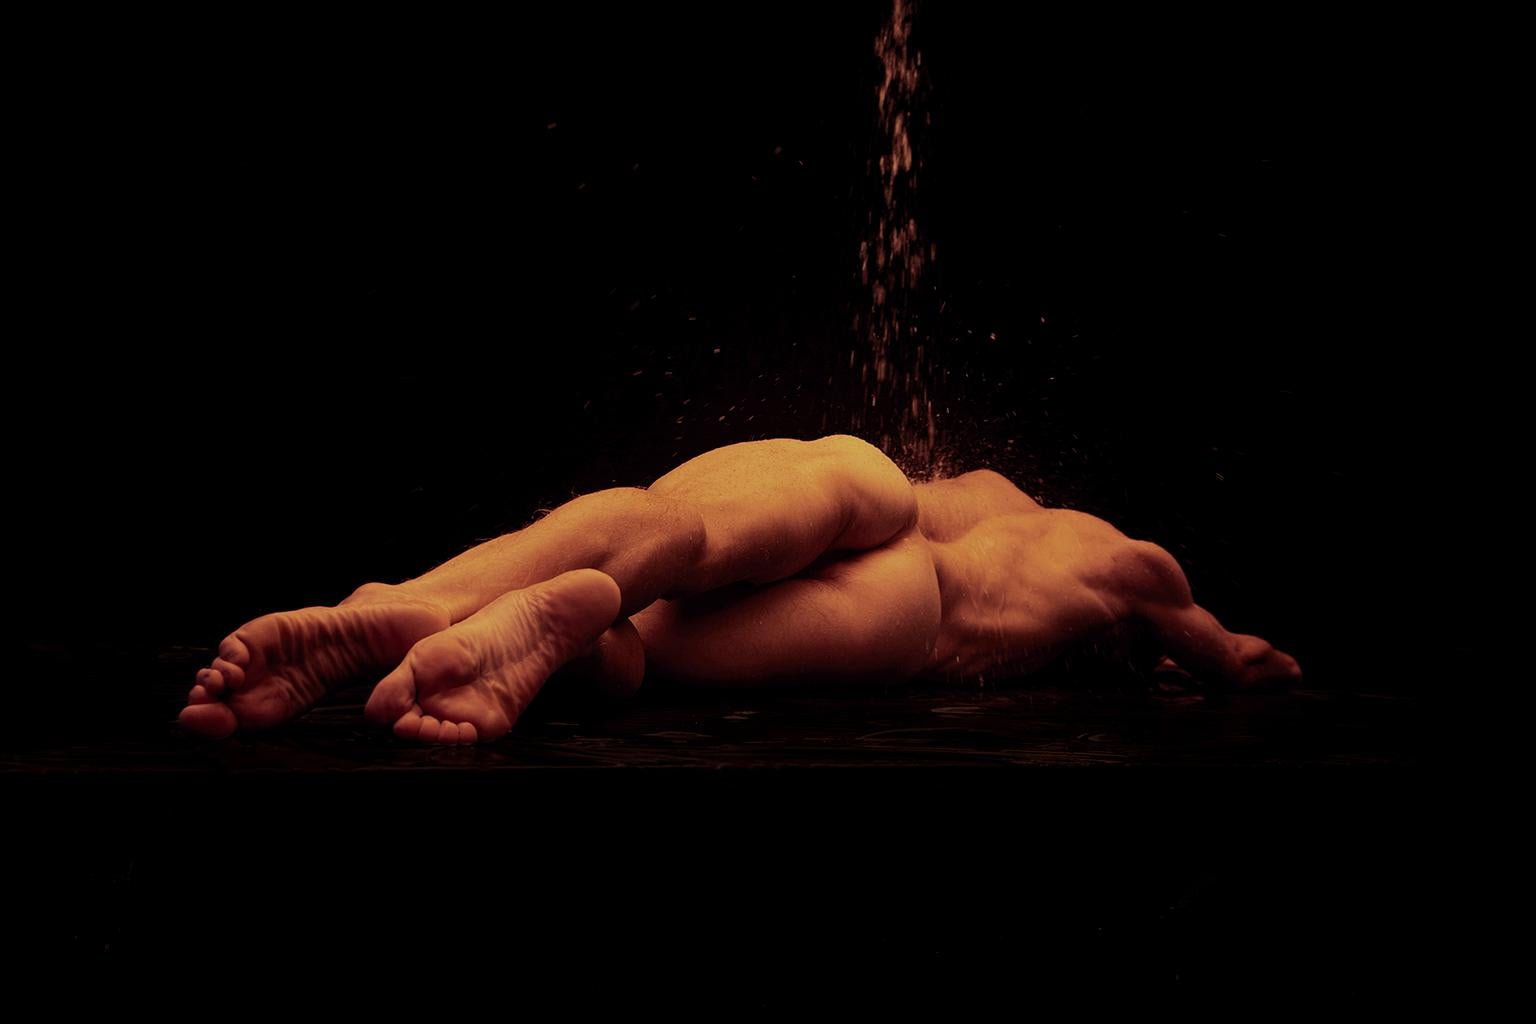 Nude Photograph Ricky Cohete - Bautizo. Momentum, série. Photographie couleur d'homme nu en édition limitée